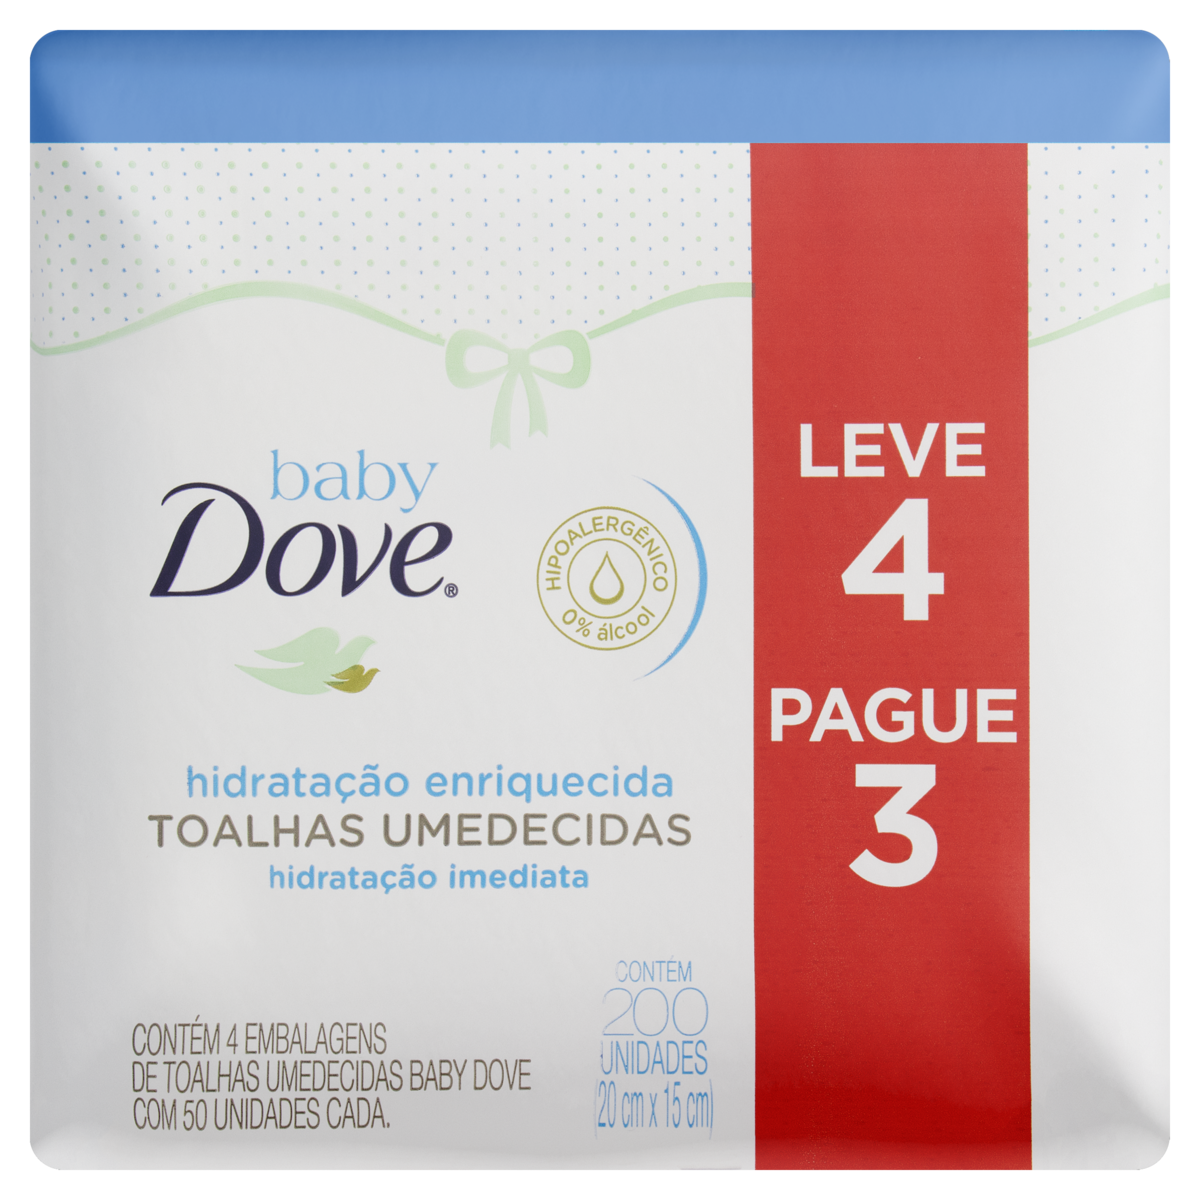 7891150049994 - PACK TOALHA UMEDECIDA INFANTIL HIDRATAÇÃO ENRIQUECIDA DOVE BABY PACOTE LEVE 4 PAGUE 3 UNIDADES